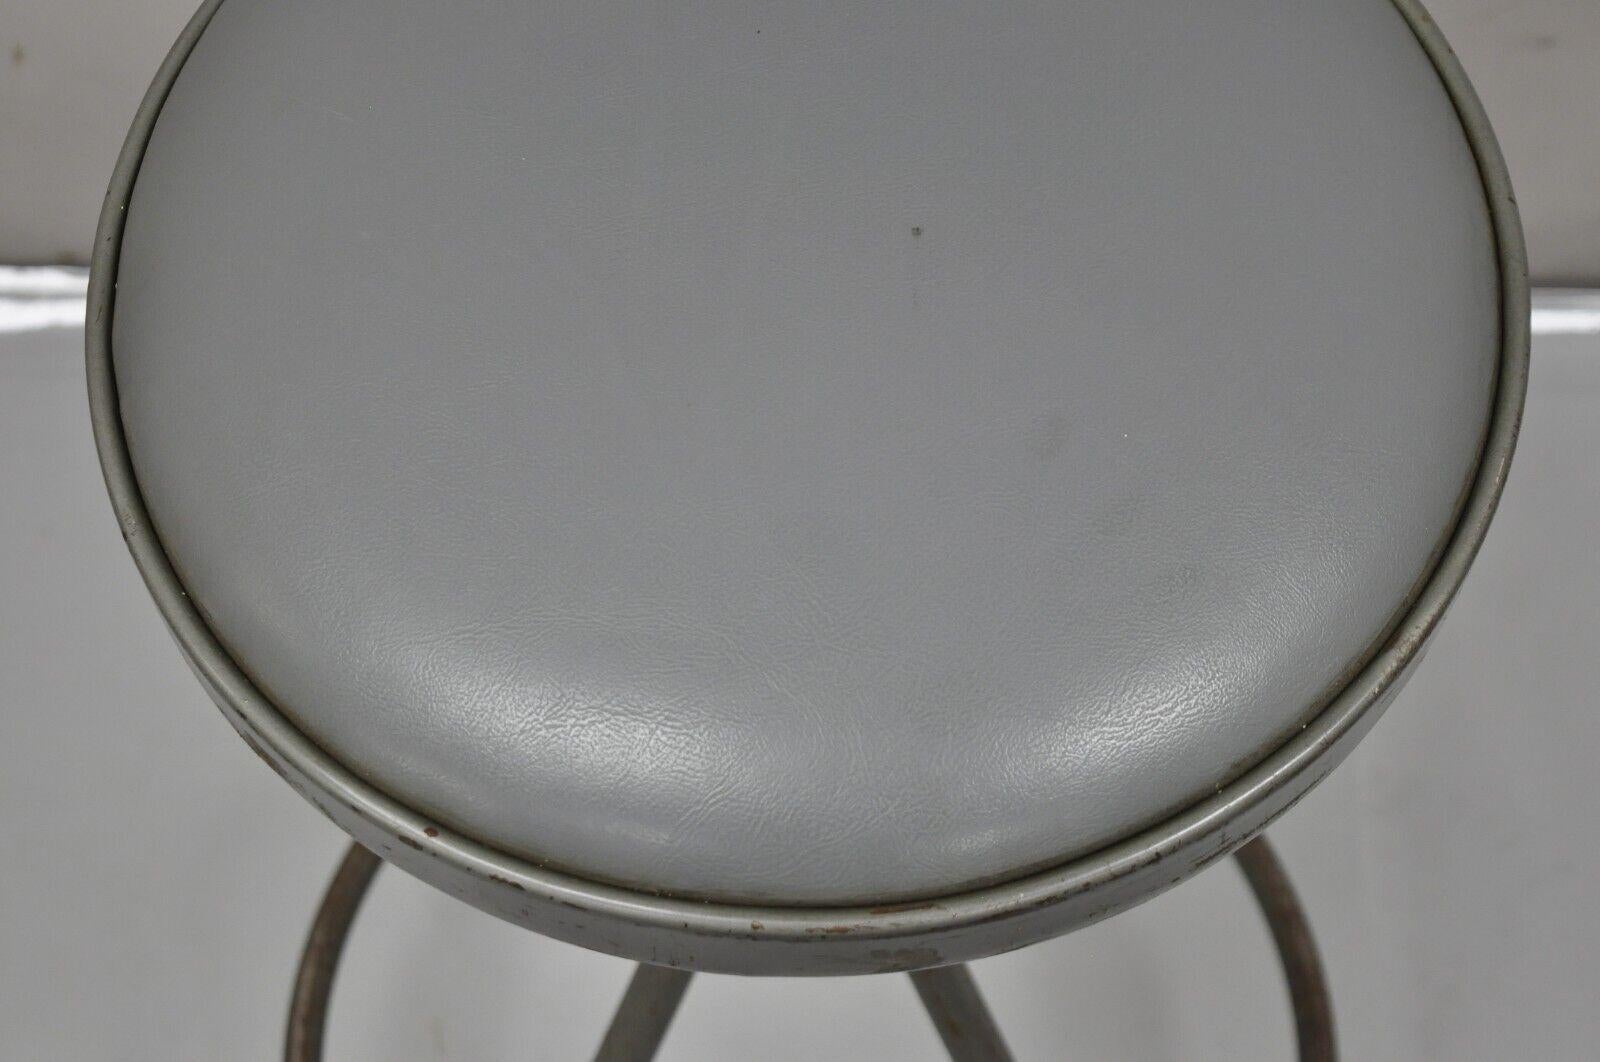 Vintage Industrial Gray Steel Metal Adjustable Drafting Stool Work Chair 3